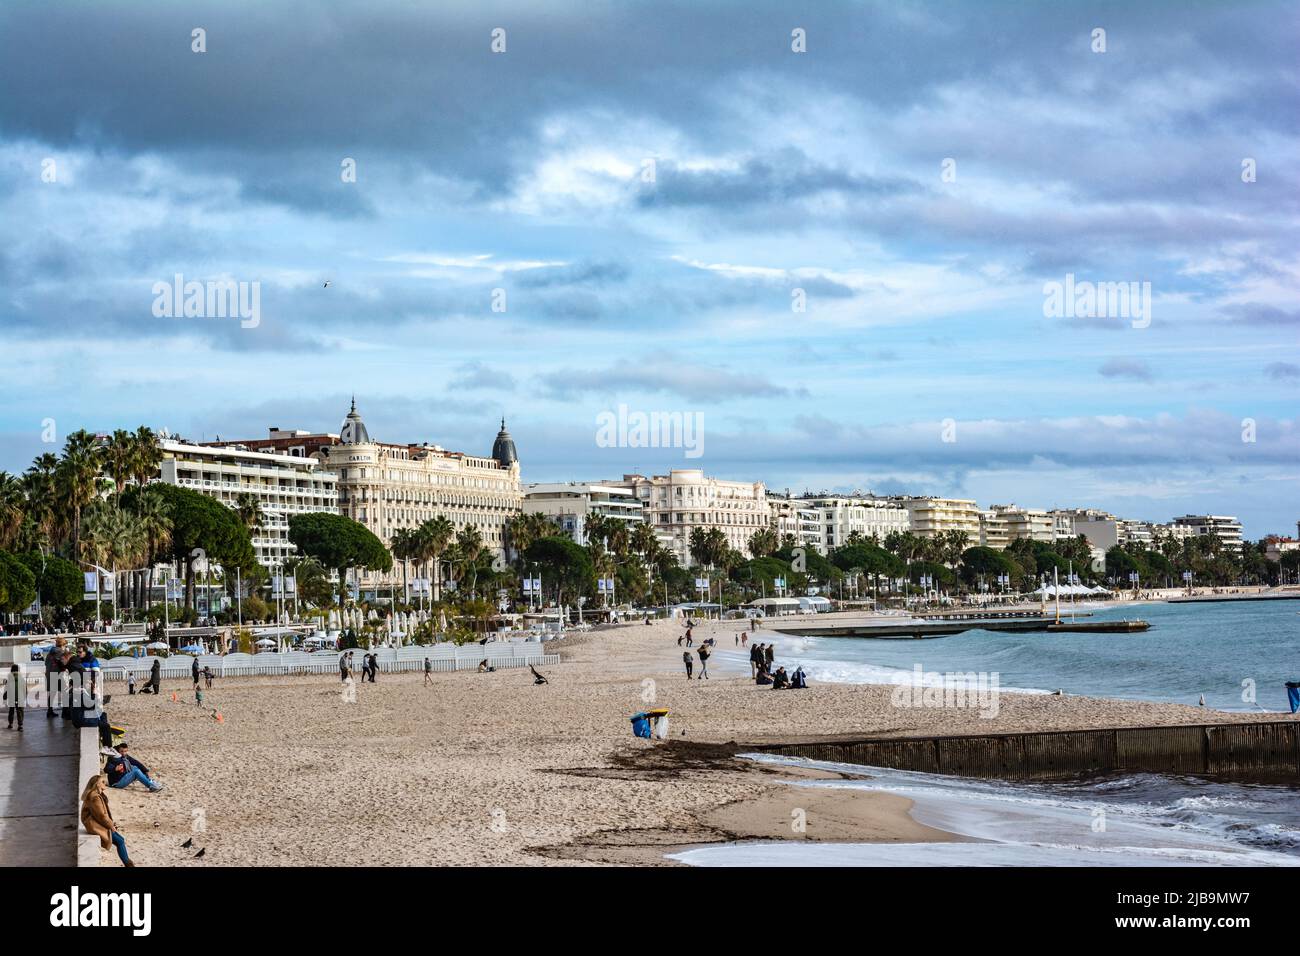 Promenade de la Croisette view from the beach, Cannes, French Riviera, France Stock Photo